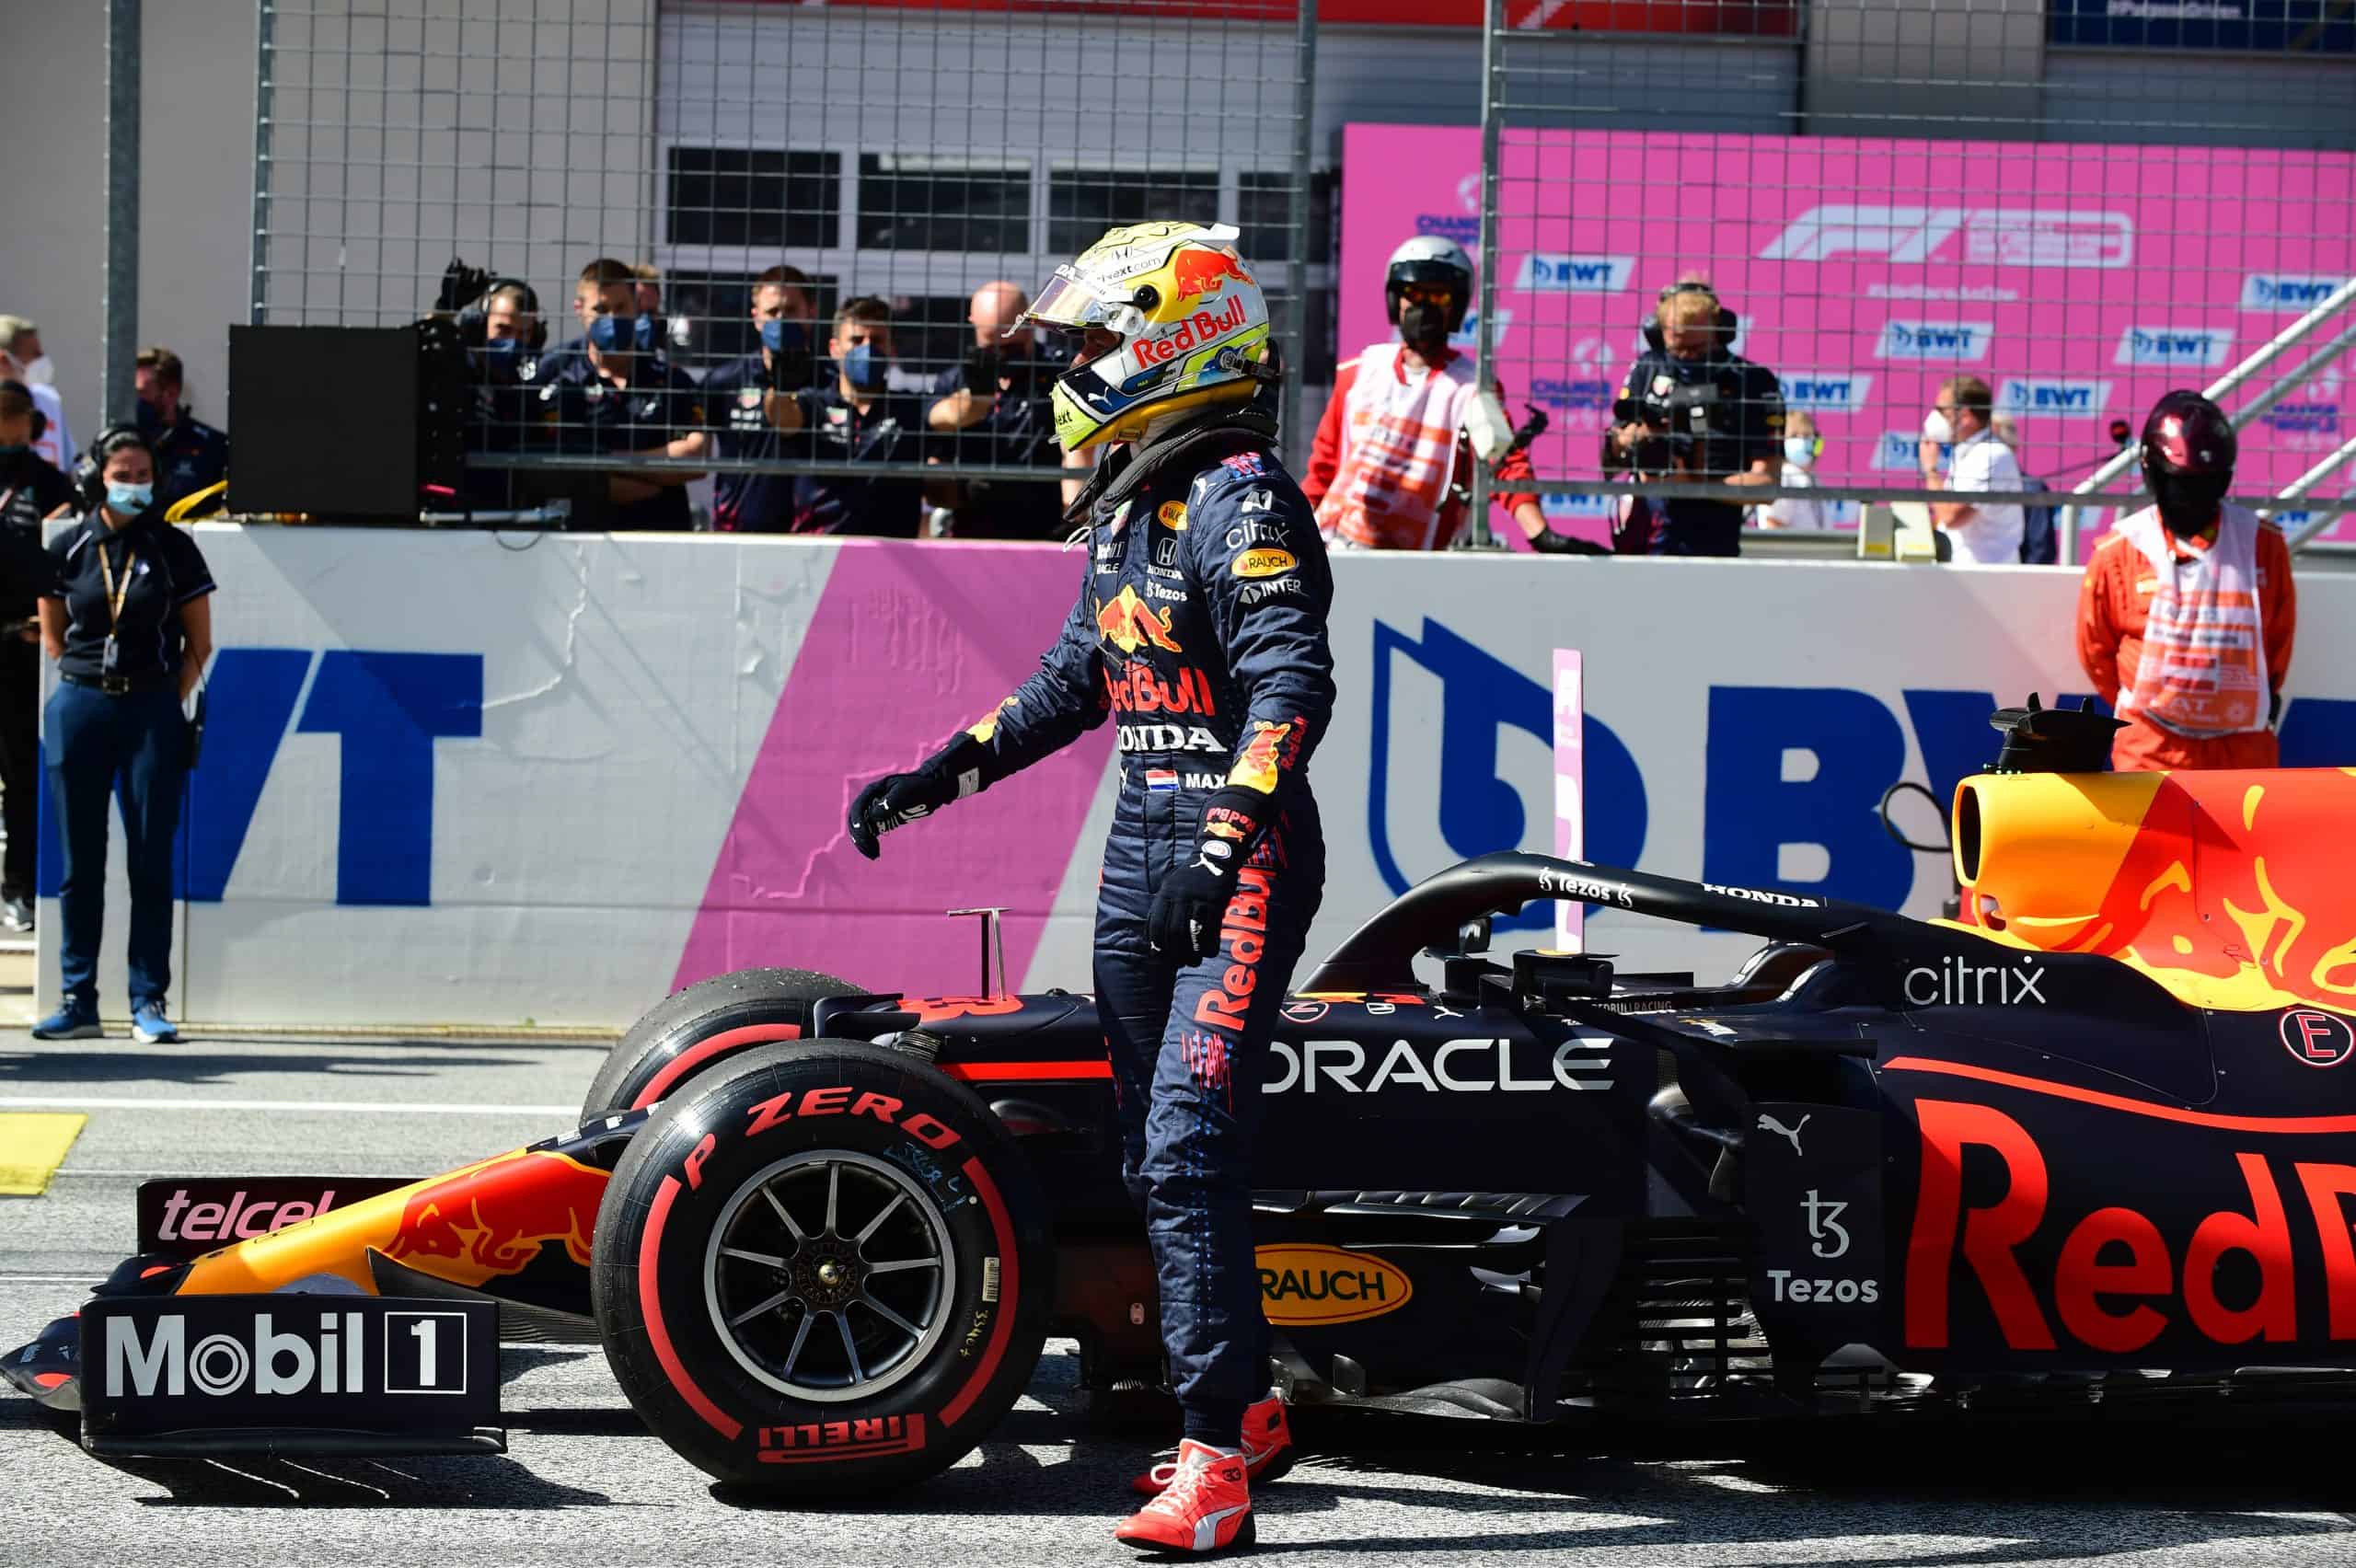 Formuła 1: Max Verstappen wygrał Grand Prix Styrii. Wspaniała seria Red Bull Racing!